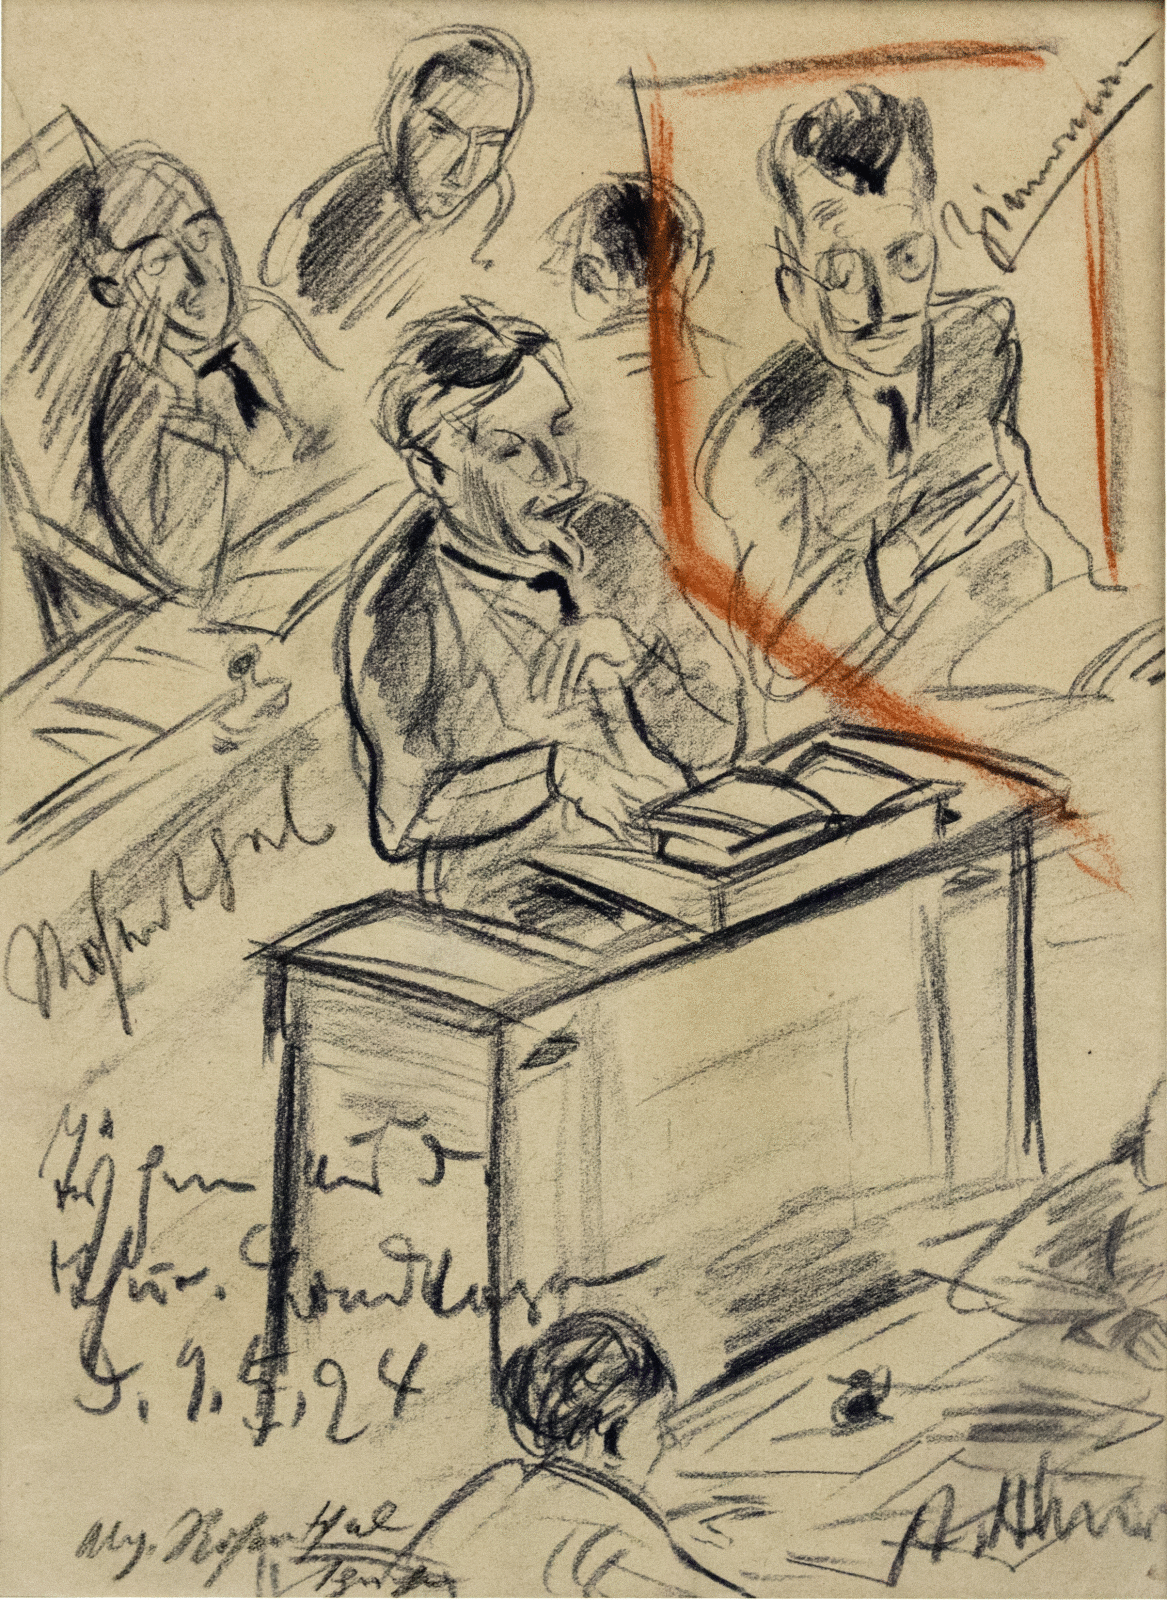 Die Zeichnung zeigt skizzenhaft Eduard Rosenthal am Rednerpult im Landtag 1924. Links steht sein Name. Weitere drei Personen sind hinter ihm angedeutet. Der Mann rechts von ihm ist mit "Zimmermann" bezeichnet.